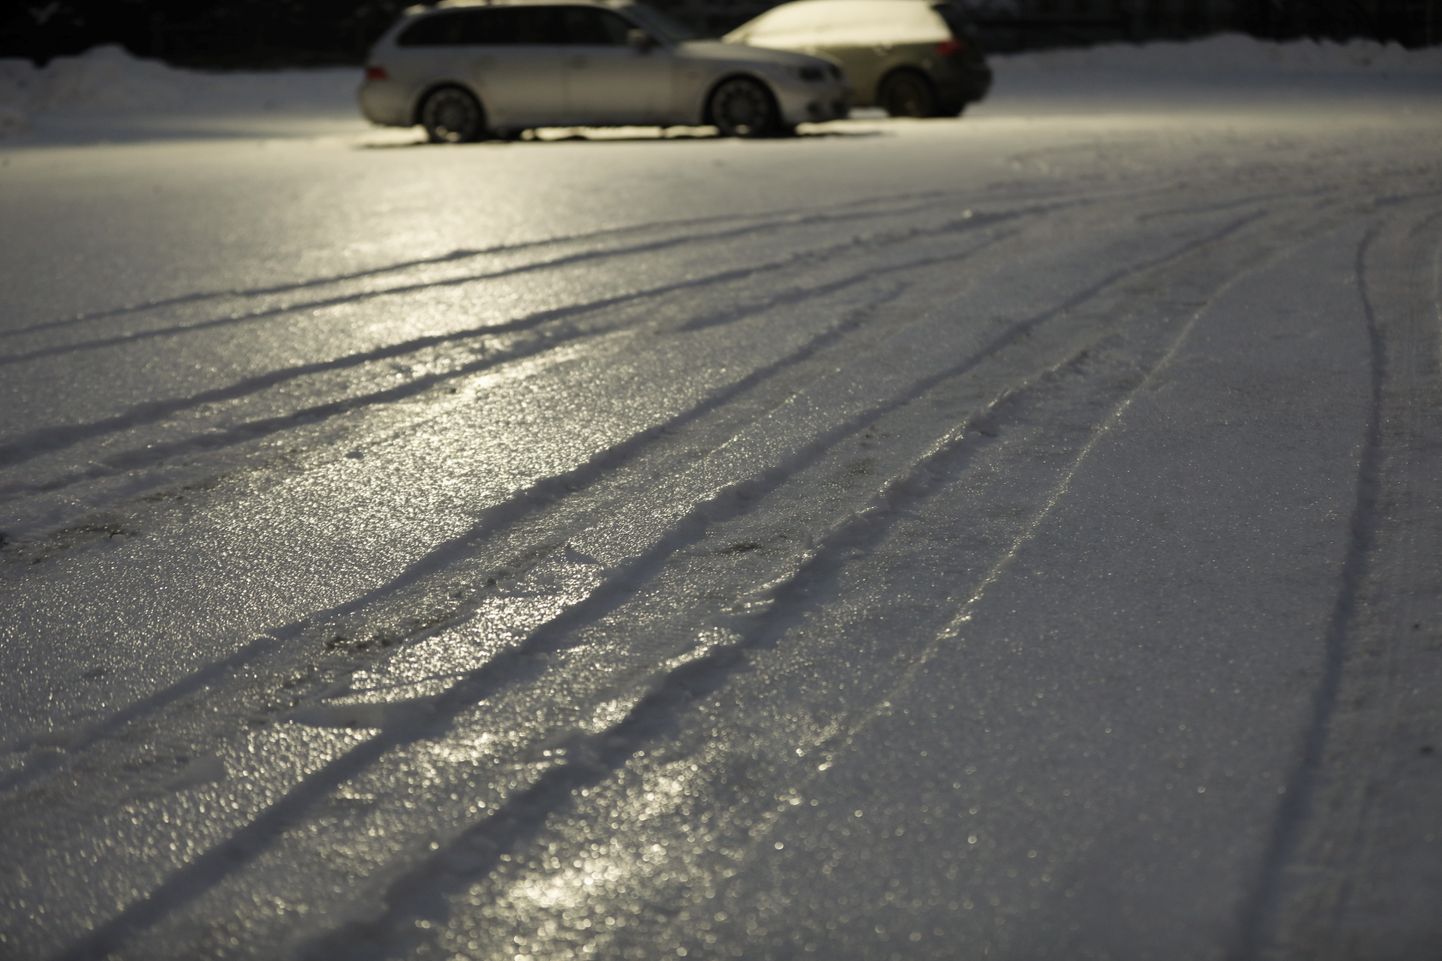 Saistībā ar sniegu, lietu un atkalu apgrūtināti braukšanas apstākļi,